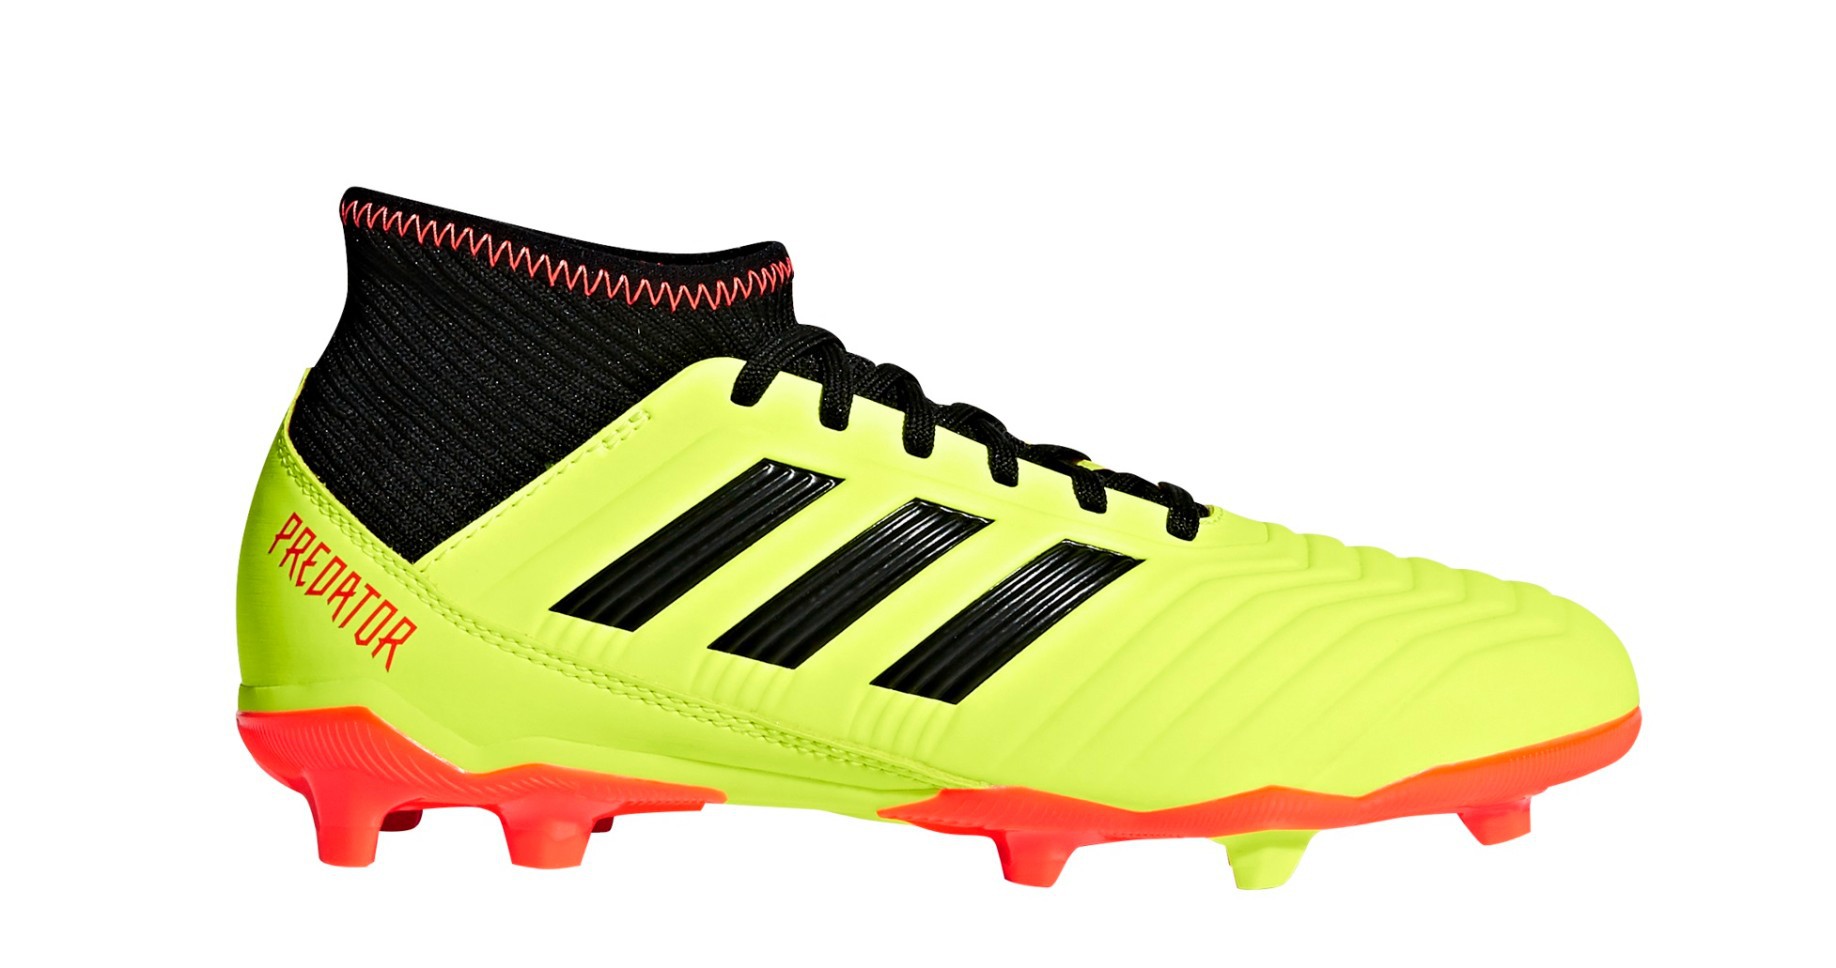 Nota Enfadarse Intacto Botas de fútbol Adidas Predator 18.3 FG Modo de ahorro de Energía Pack  colore amarillo rojo - Adidas - SportIT.com